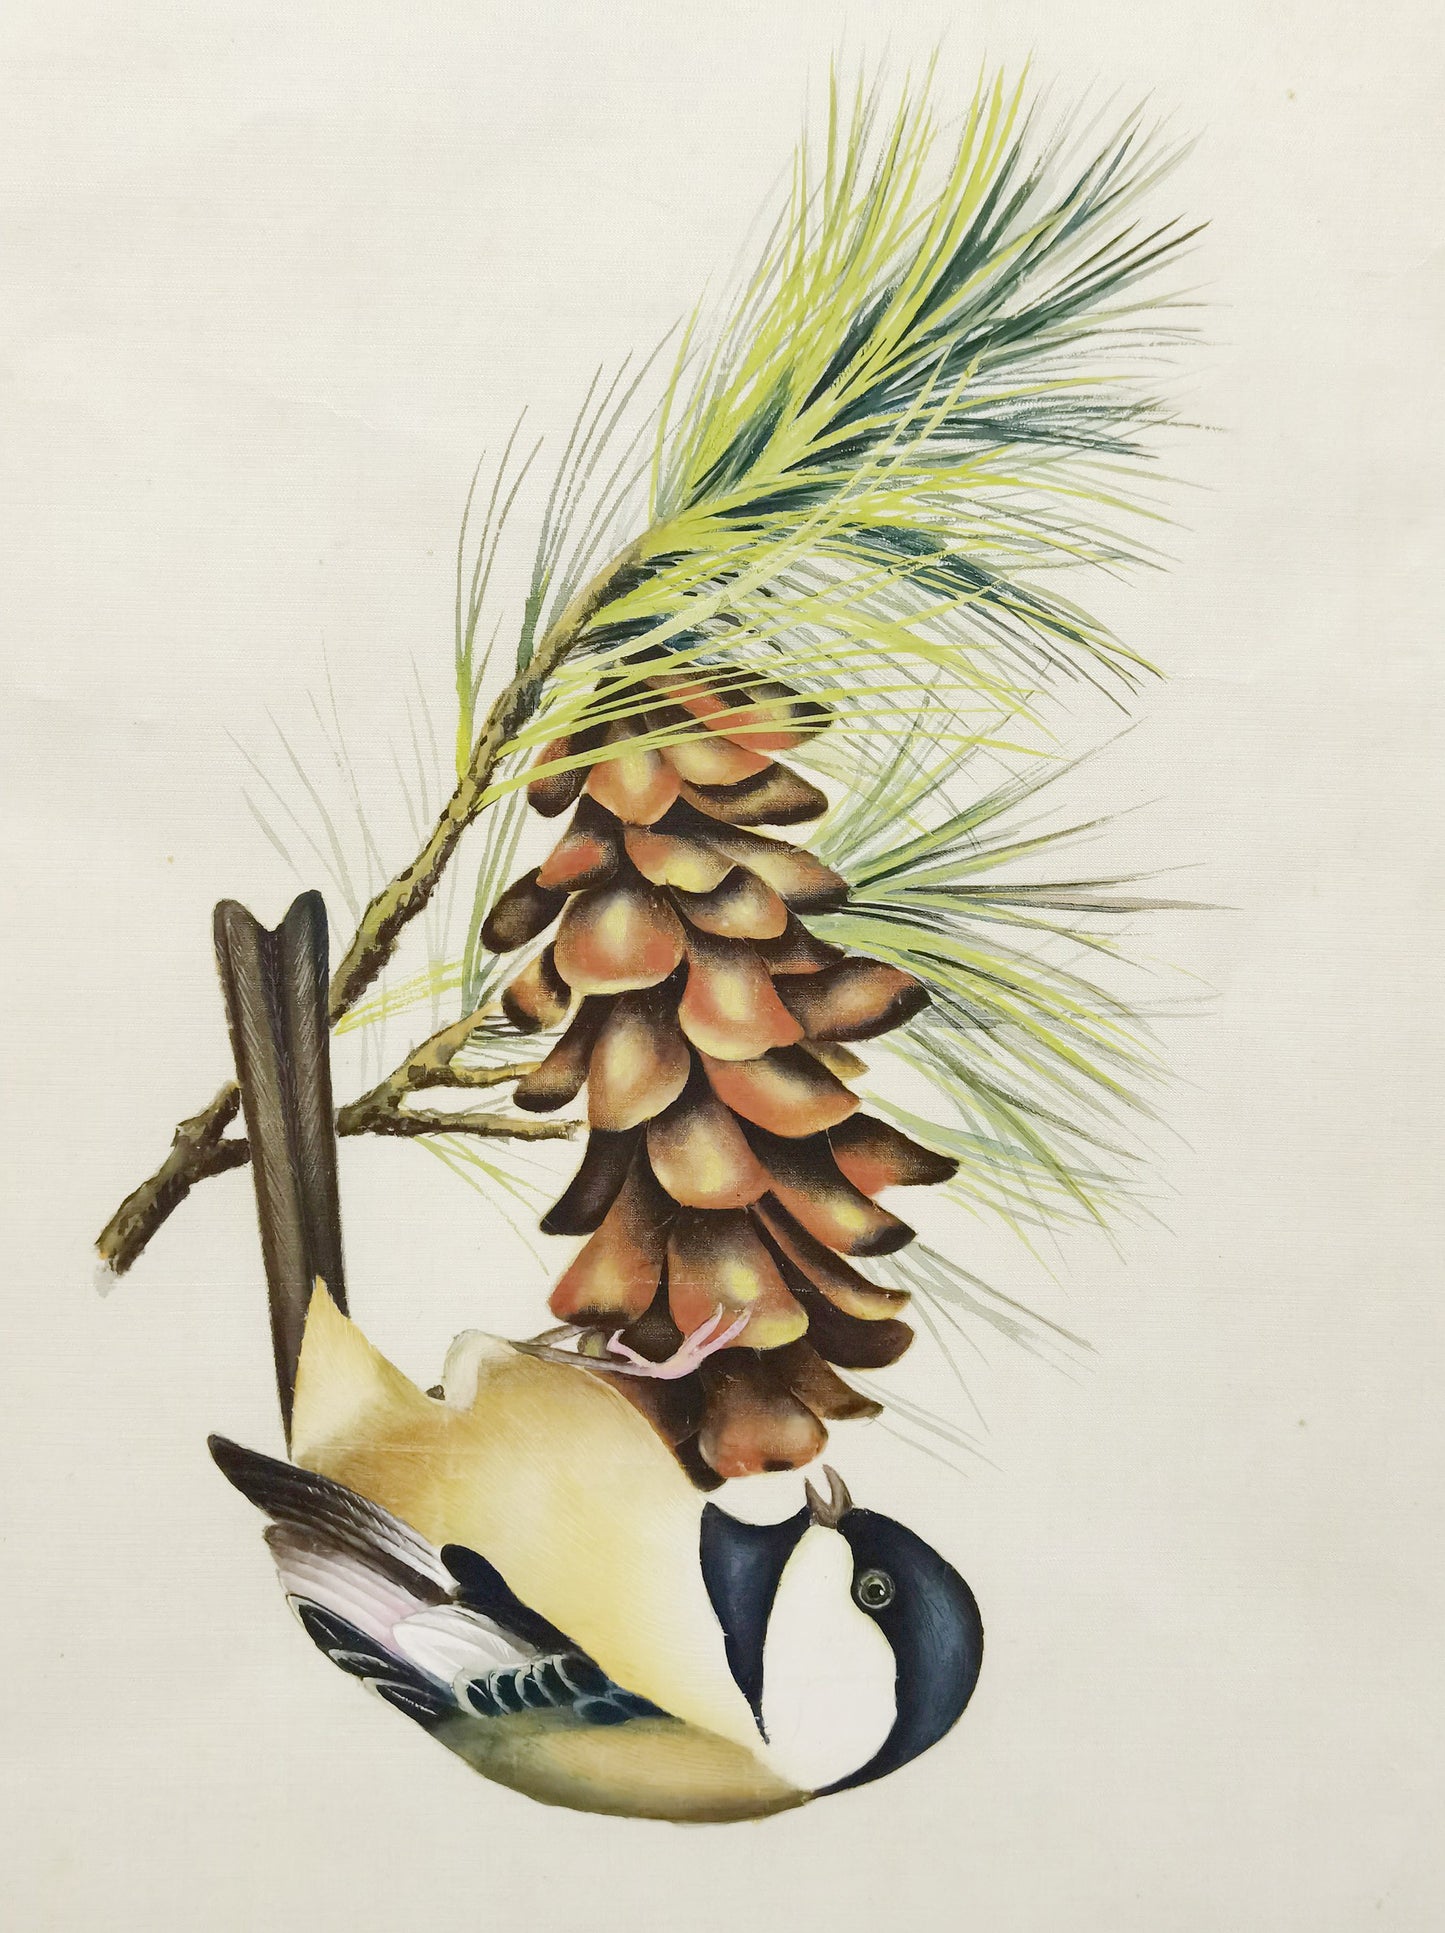 Chickadee State Bird Handmade Art Printing Maine WhitePineCone&Tassel with Wood Frame